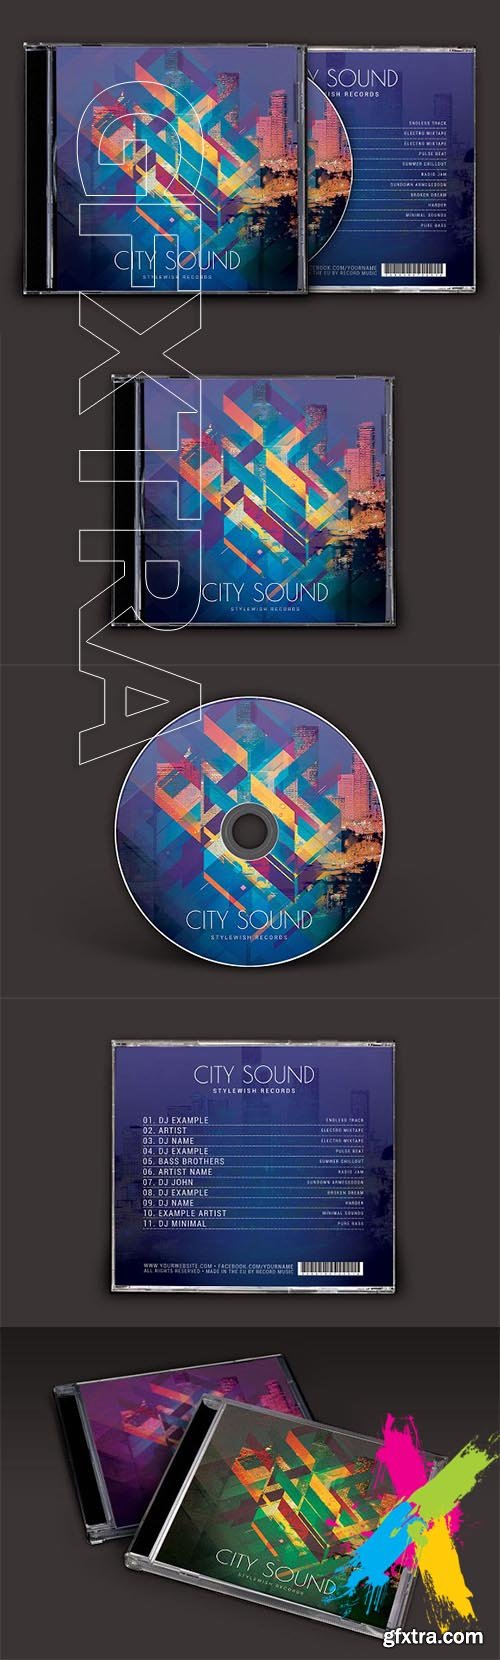 CreativeMarket - City Sound CD Cover Artwork 2019282